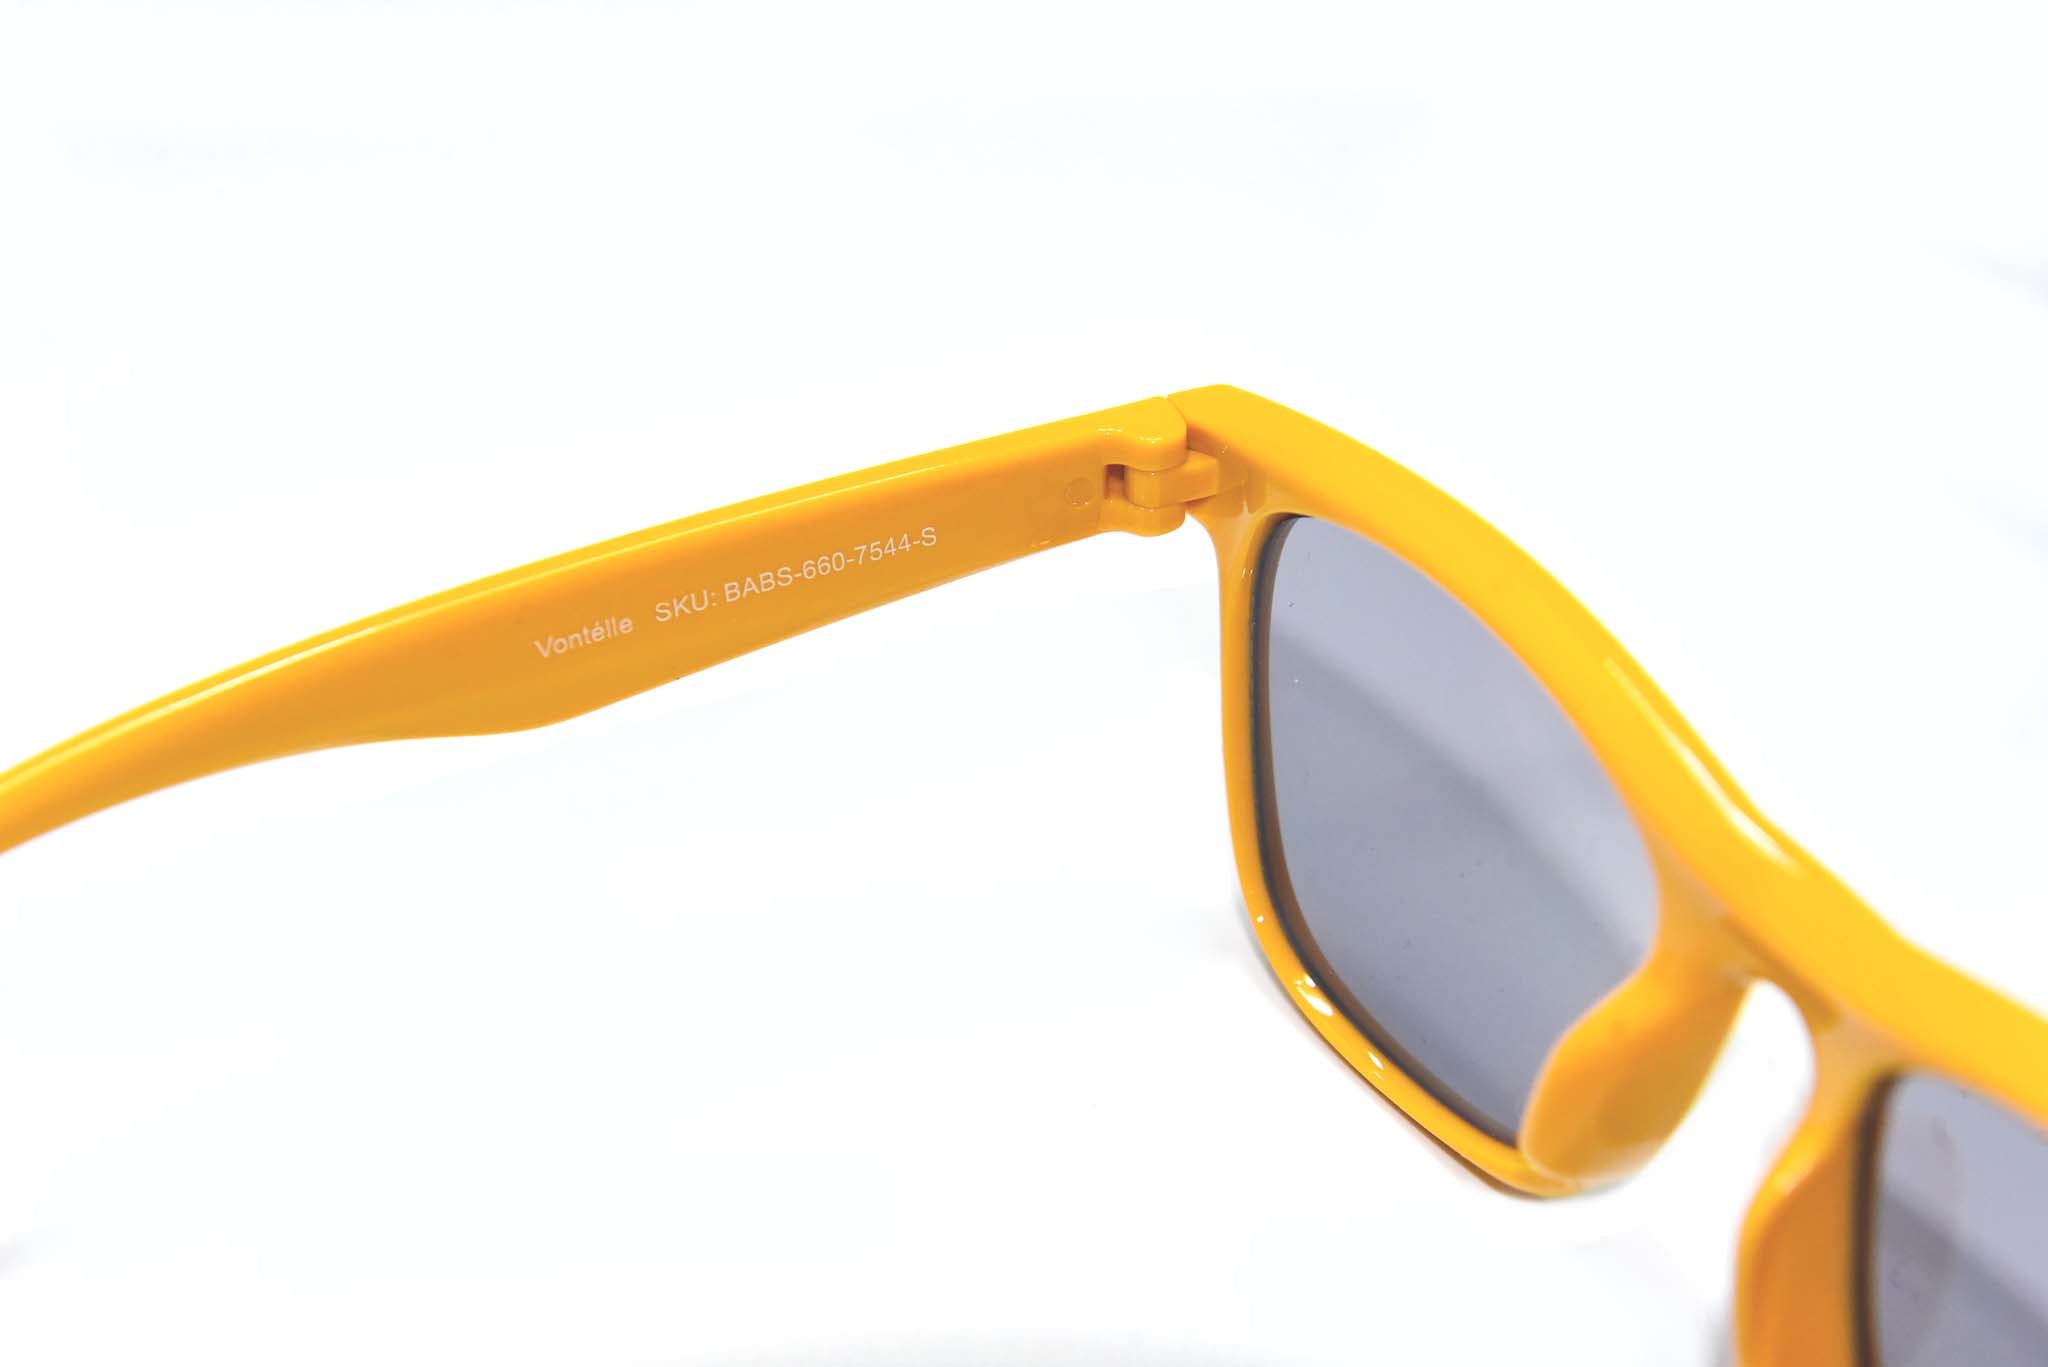 Baby Shark Yellow Sunglasses